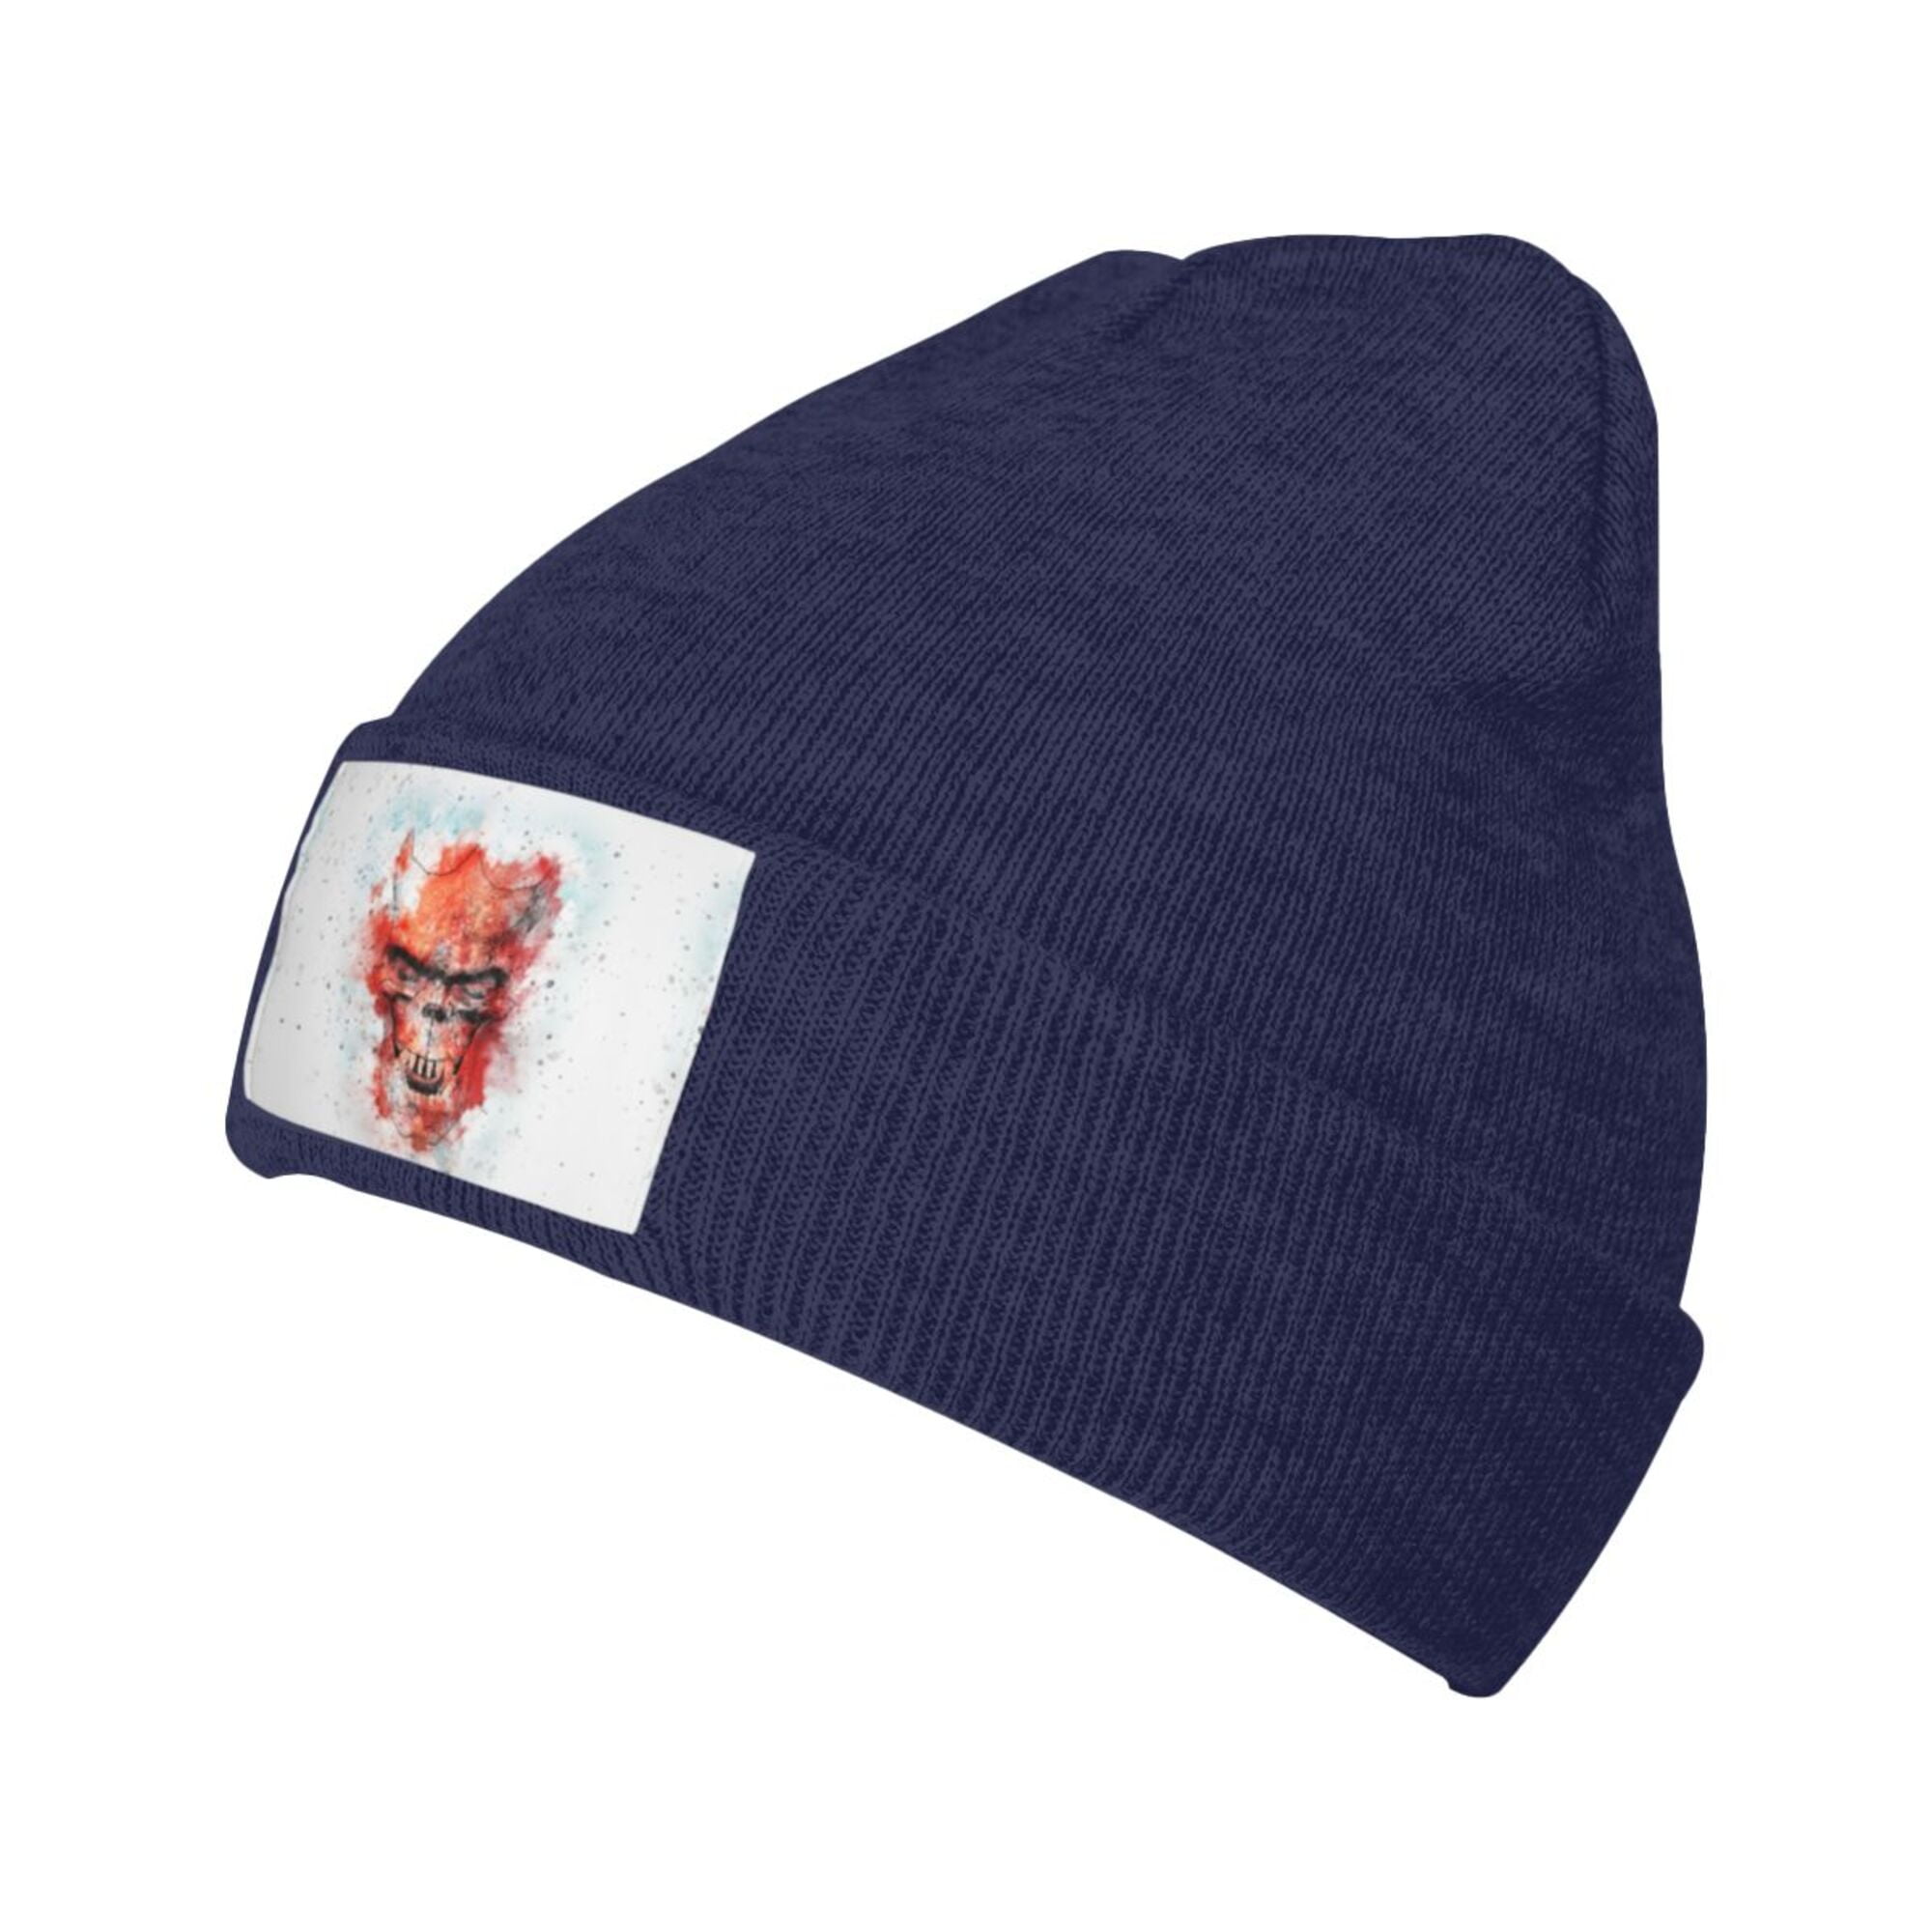 ZICANCN Knit Beanie Hat-Skull Gothic Horn Art Winter Cap Soft Warm